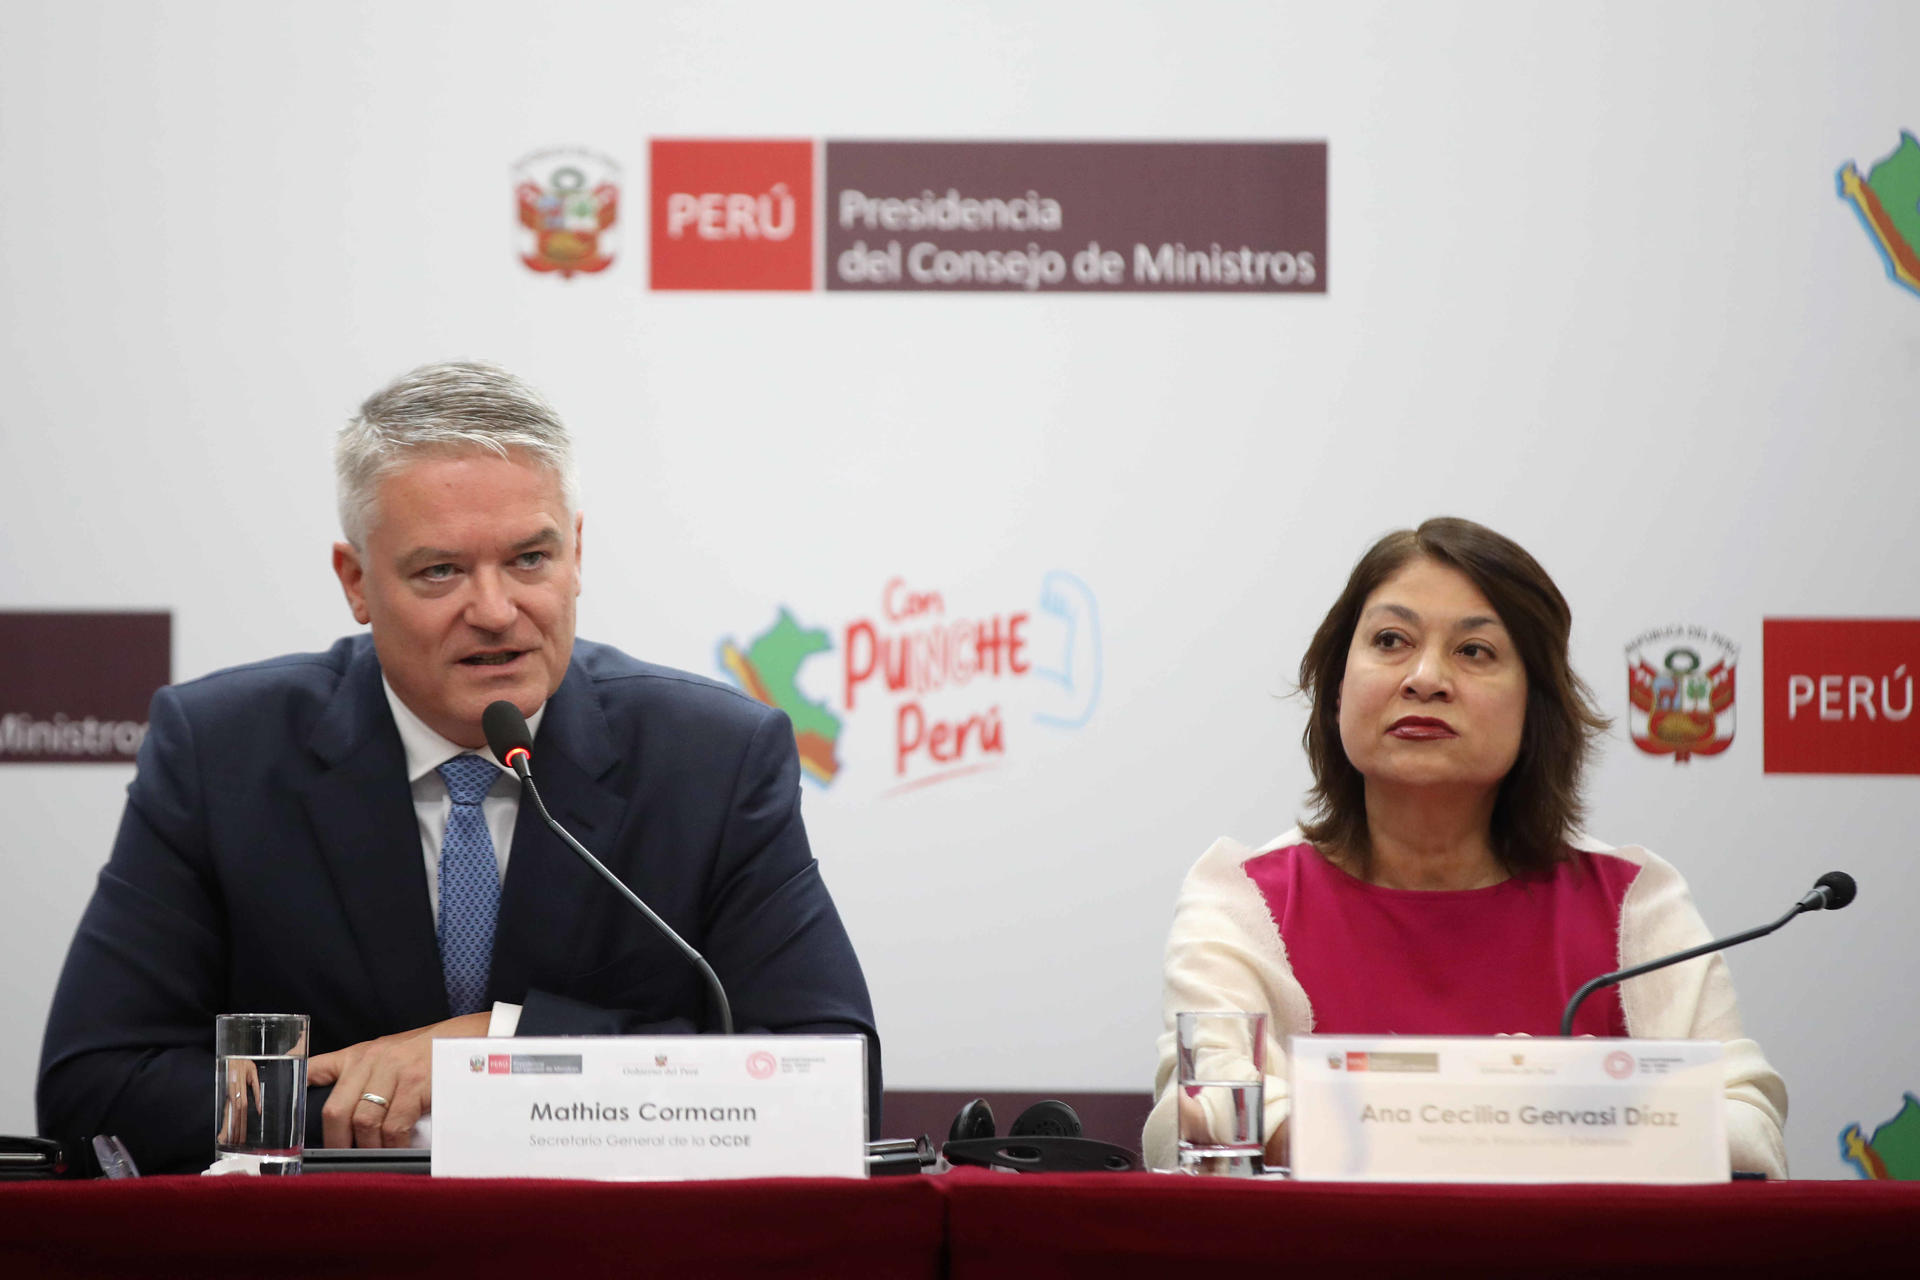 El secretario general de la OCDE, Mathias Cormann (i), junto a la ministra de Relaciones Exteriores de Perú, Ana Cecilia Gervasi (d), participan en una rueda de prensa, hoy en Lima (Perú). EFE/Paolo Aguilar